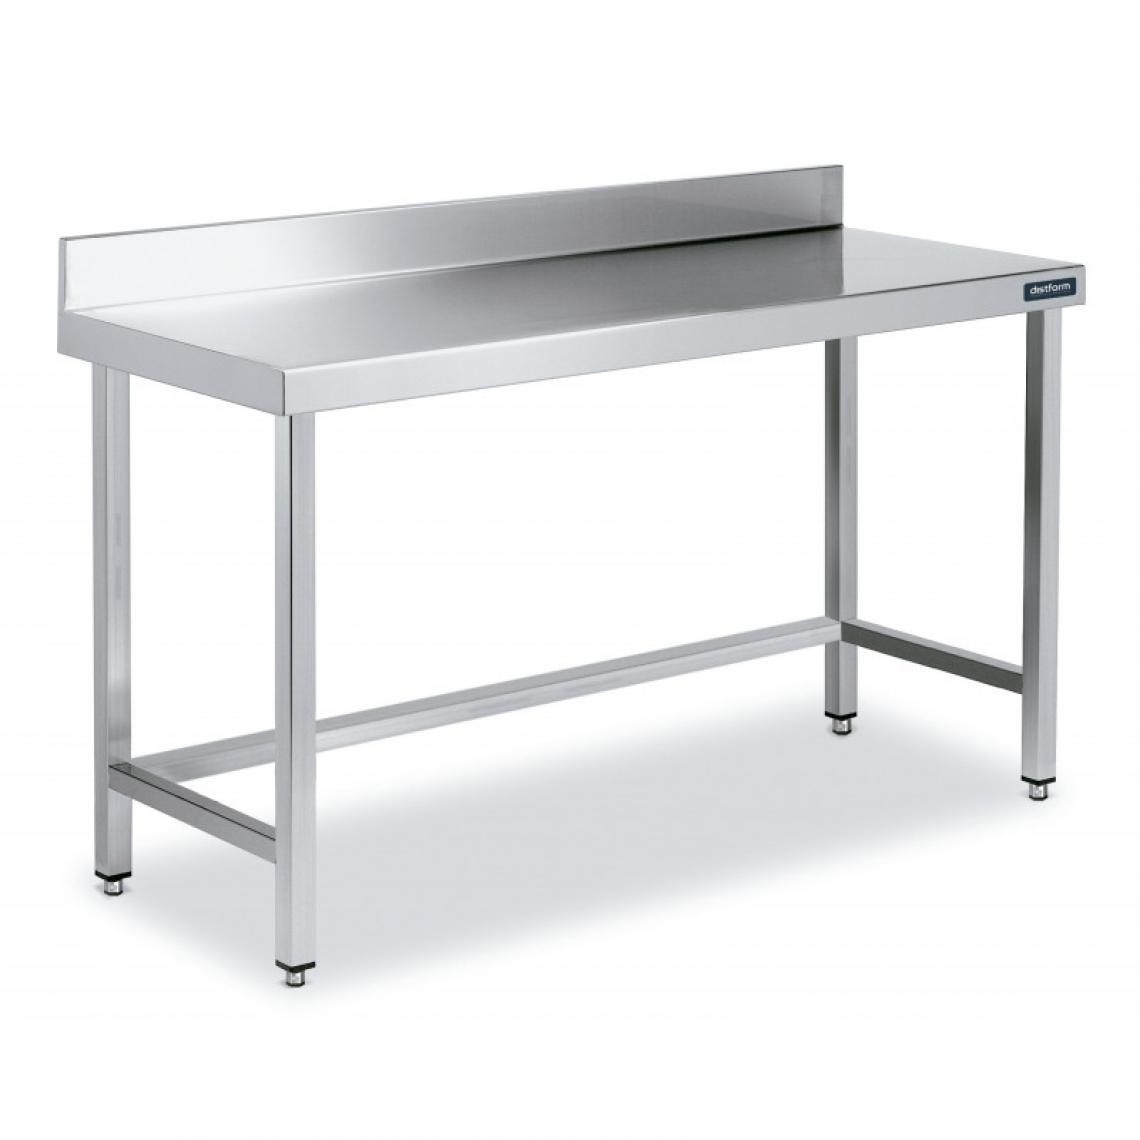 DISTFORM - Table Adossée en Inox avec Renforts Profondeur 700 mm - Distform - Acier inoxydable2400x700 - Tables à manger